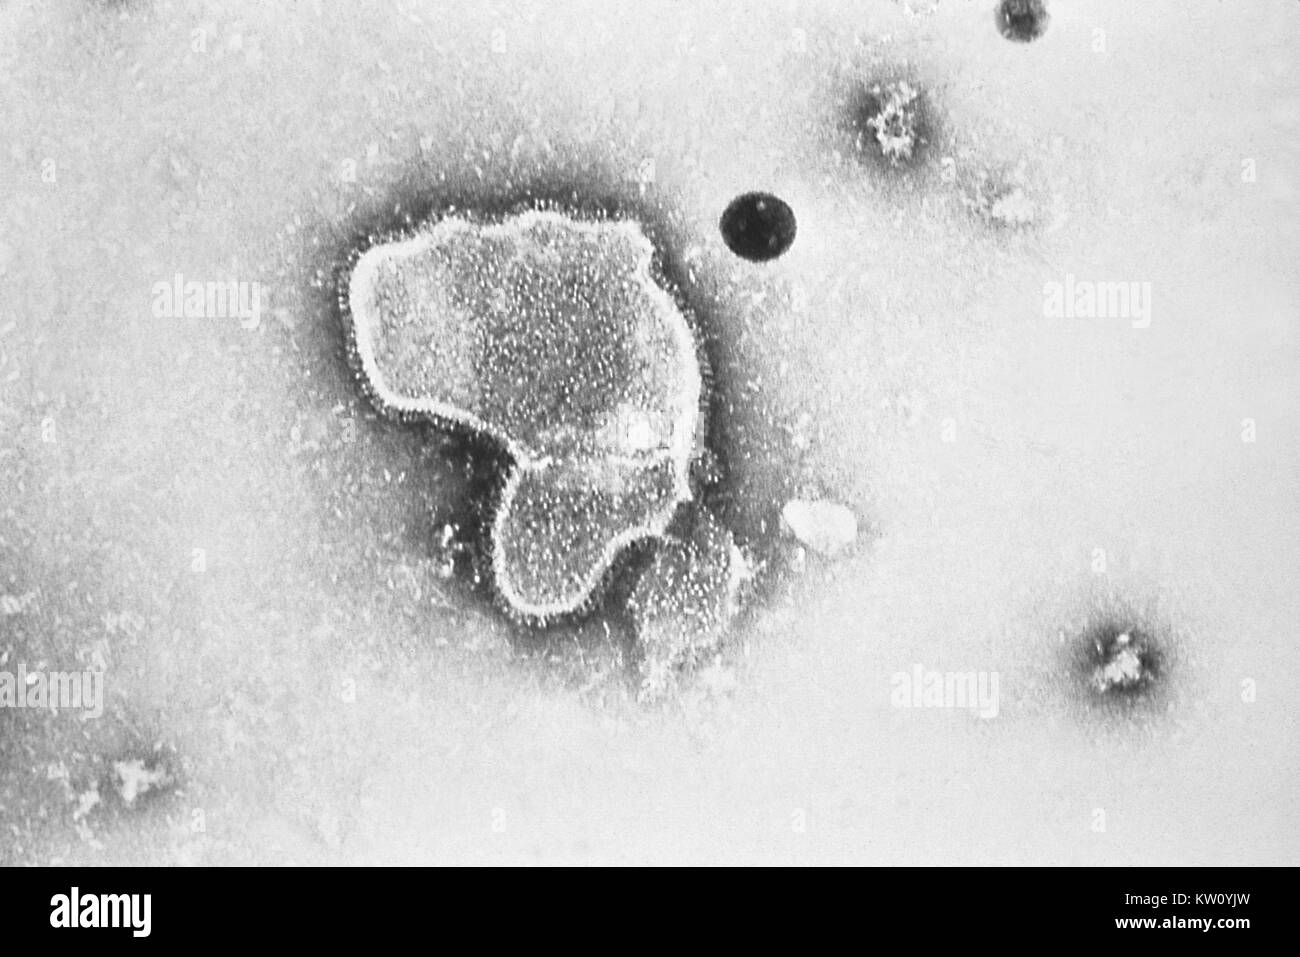 Diese Transmission Electron Micrograph (TEM) Zeigt die morphologischen Merkmale des Respiratory Syncytial Virus (RSV) bindet. Das virion ist variabel in Form und Größe (mit einem durchschnittlichen Durchmesser von 120-300 nm). RSV ist die häufigste Ursache von Bronchiolitis und Pneumonie bei Säuglingen und Kindern unter 1 Jahr alt sind. Mit freundlicher CDC/E. L. Palmer, 1981. Stockfoto